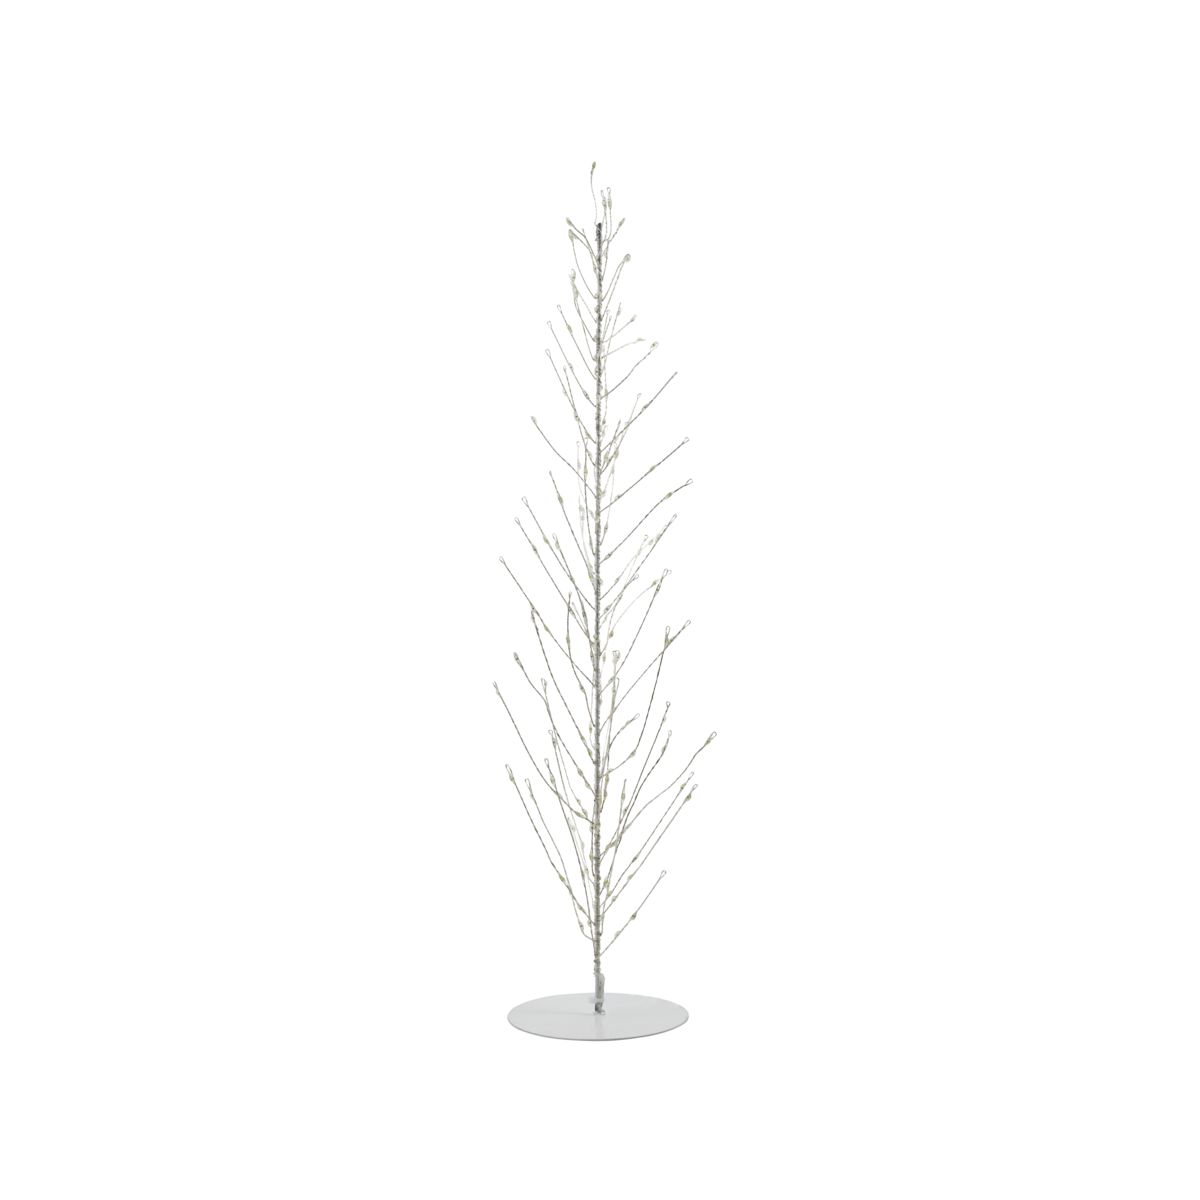 Billede af Juletræ i ståltråd, Glow, Hvid - 60 cm hos ModernHouse.dk